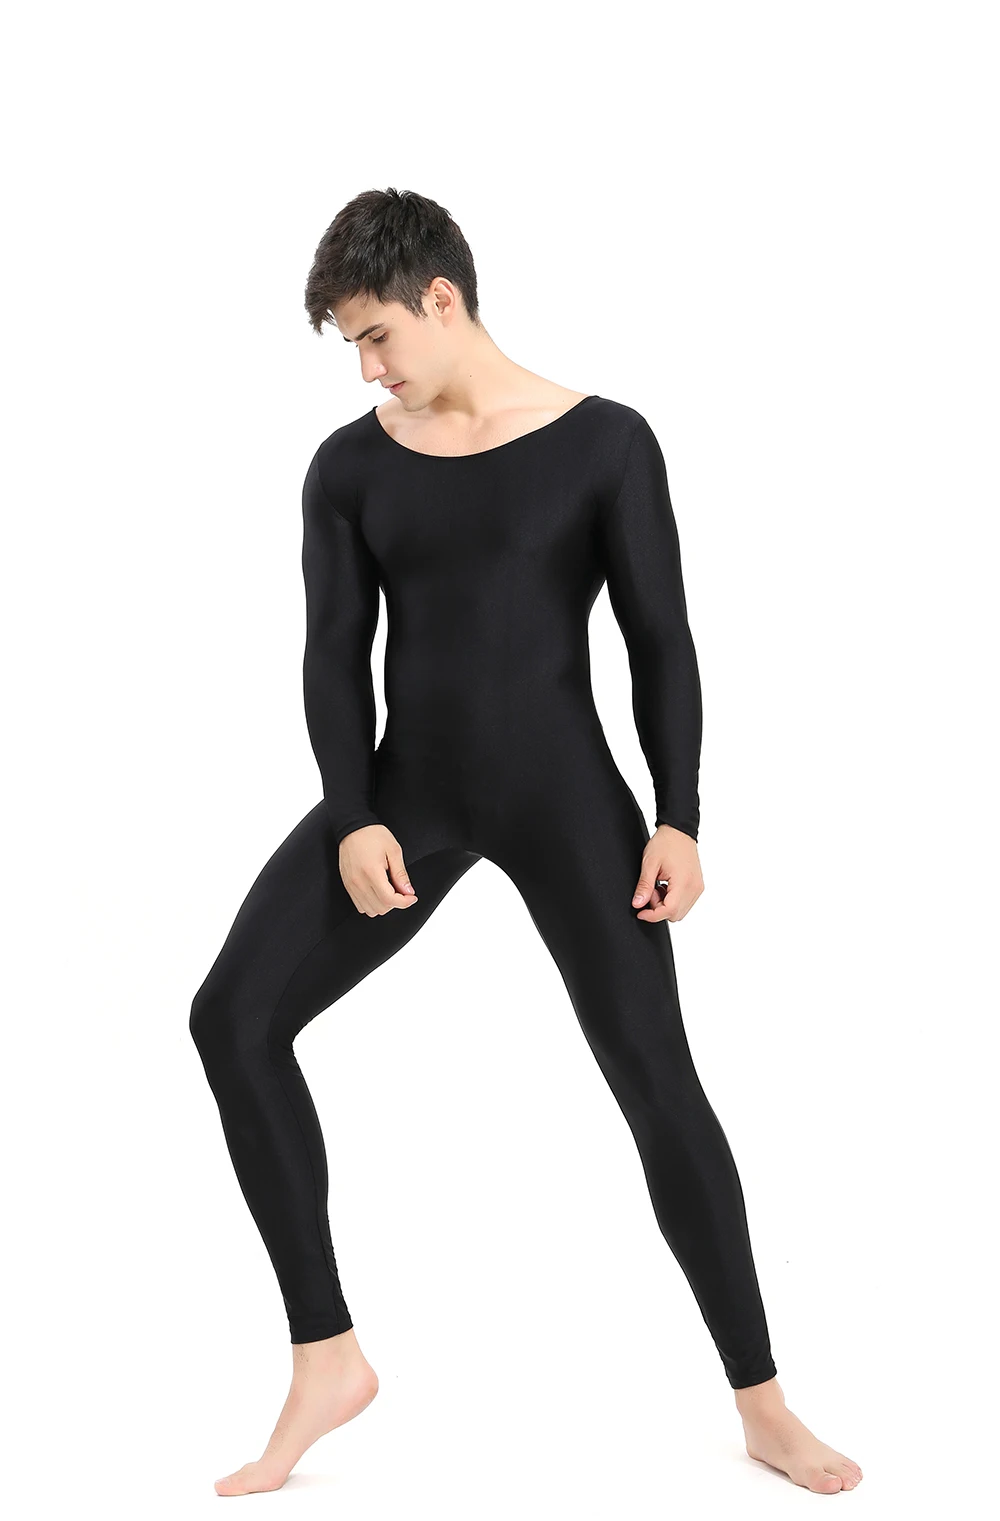 SPEERISE мужской черный комбинезон с длинным рукавом для Взрослых Цельный спандекс комбинезон из лайкры полный комбинезон Одежда для танцев